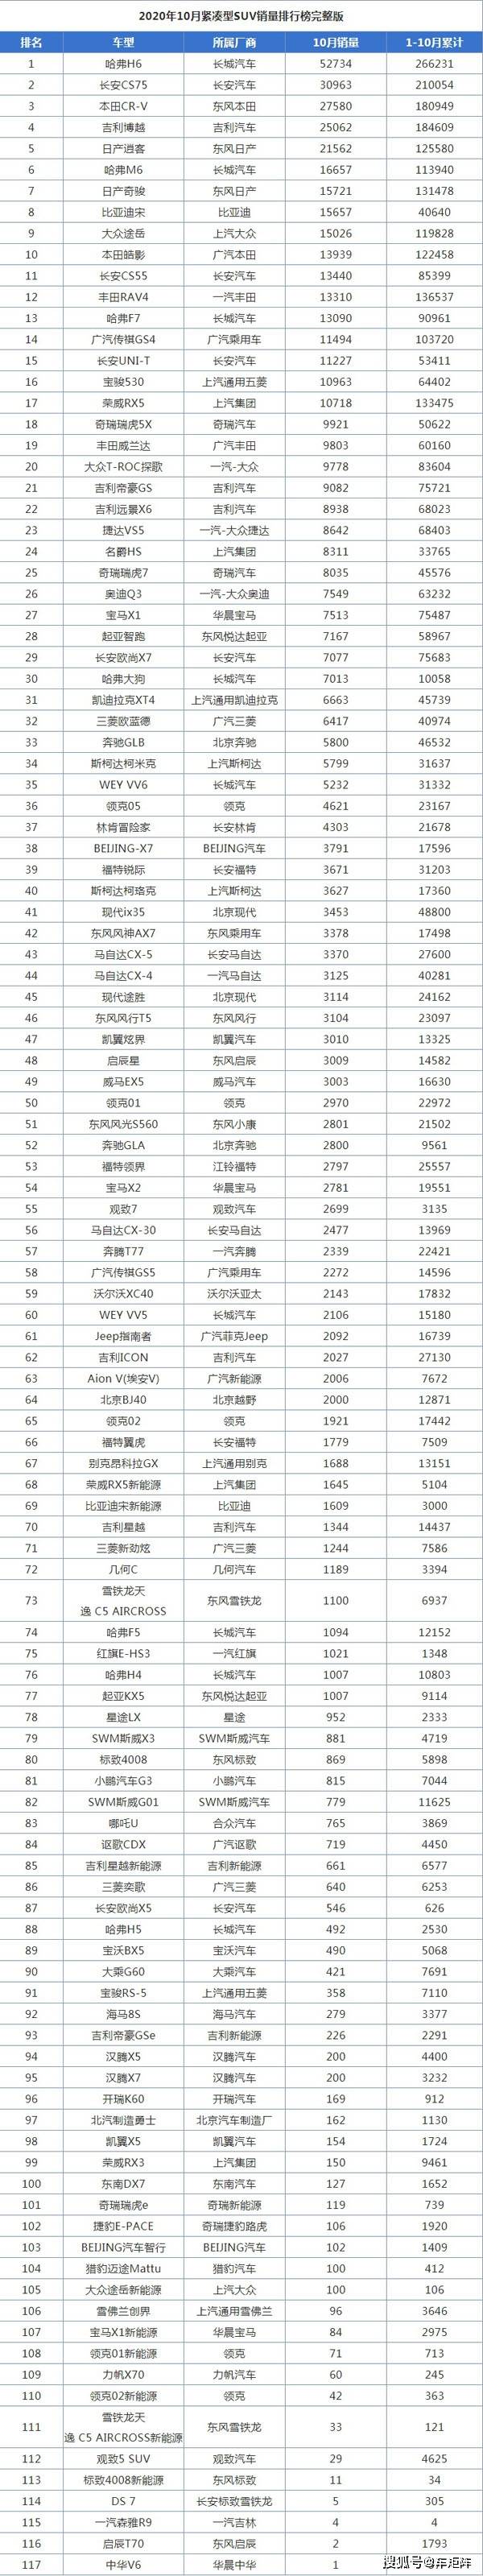 2020年越野车销量排名_中国汽车流通协会:2020年11月各汽车品牌零售销量排